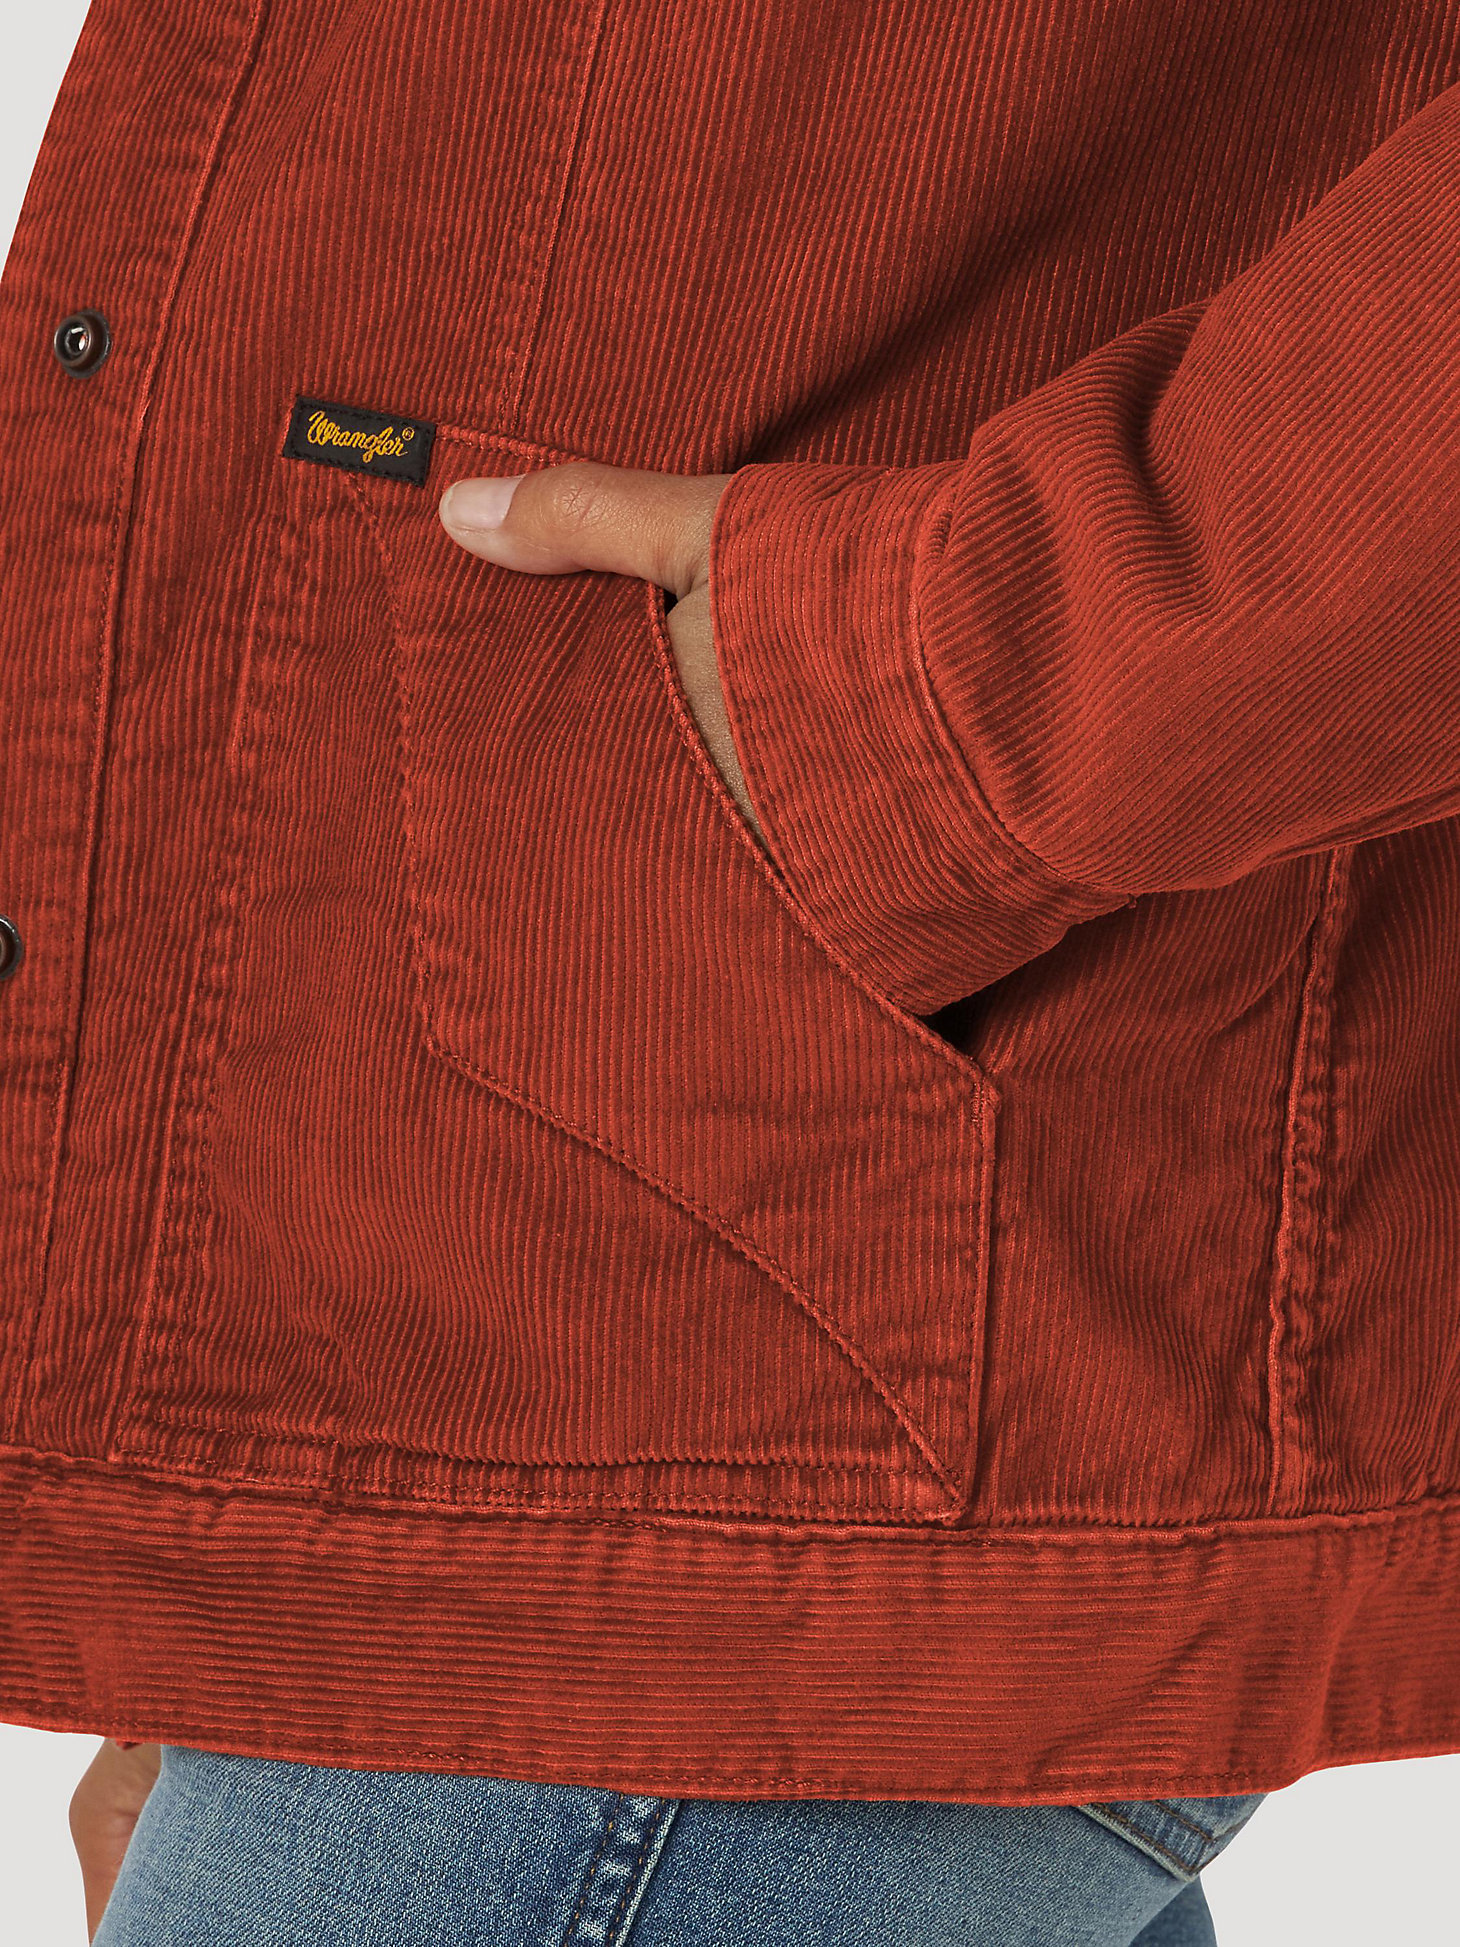 Women's Wrangler® Sherpa Lined Barn Jacket in rust alternative view 4